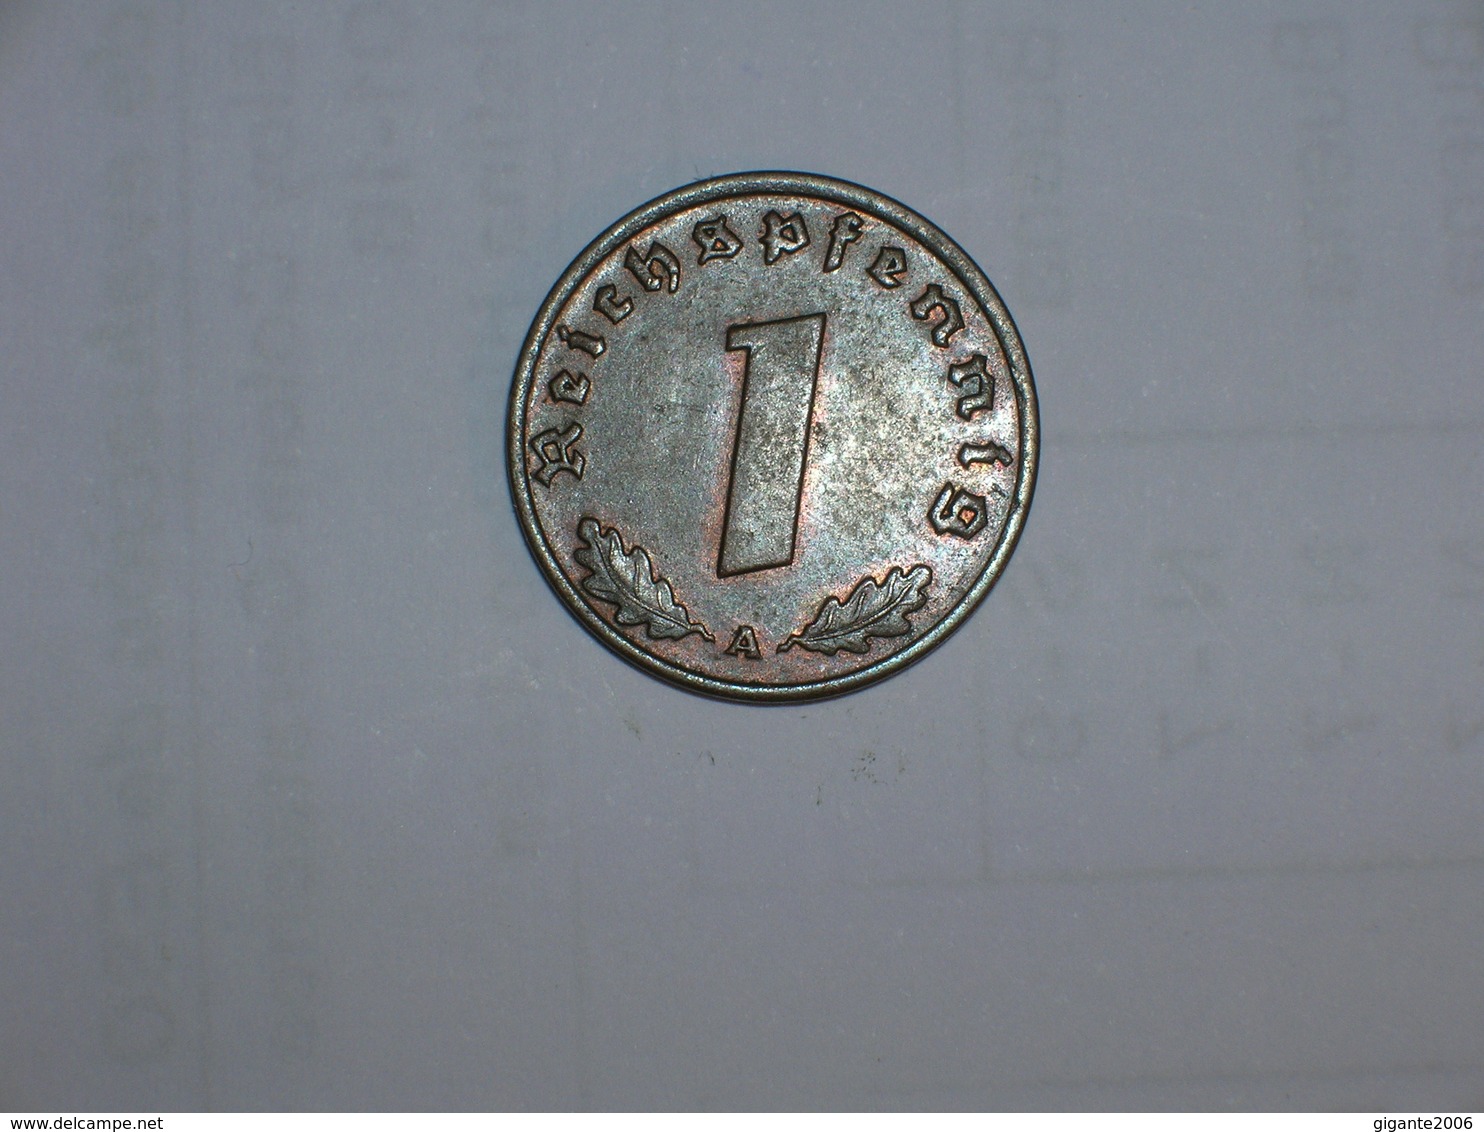 ALEMANIA- 1 PFENNIG 1937 A (848) - 1 Reichspfennig